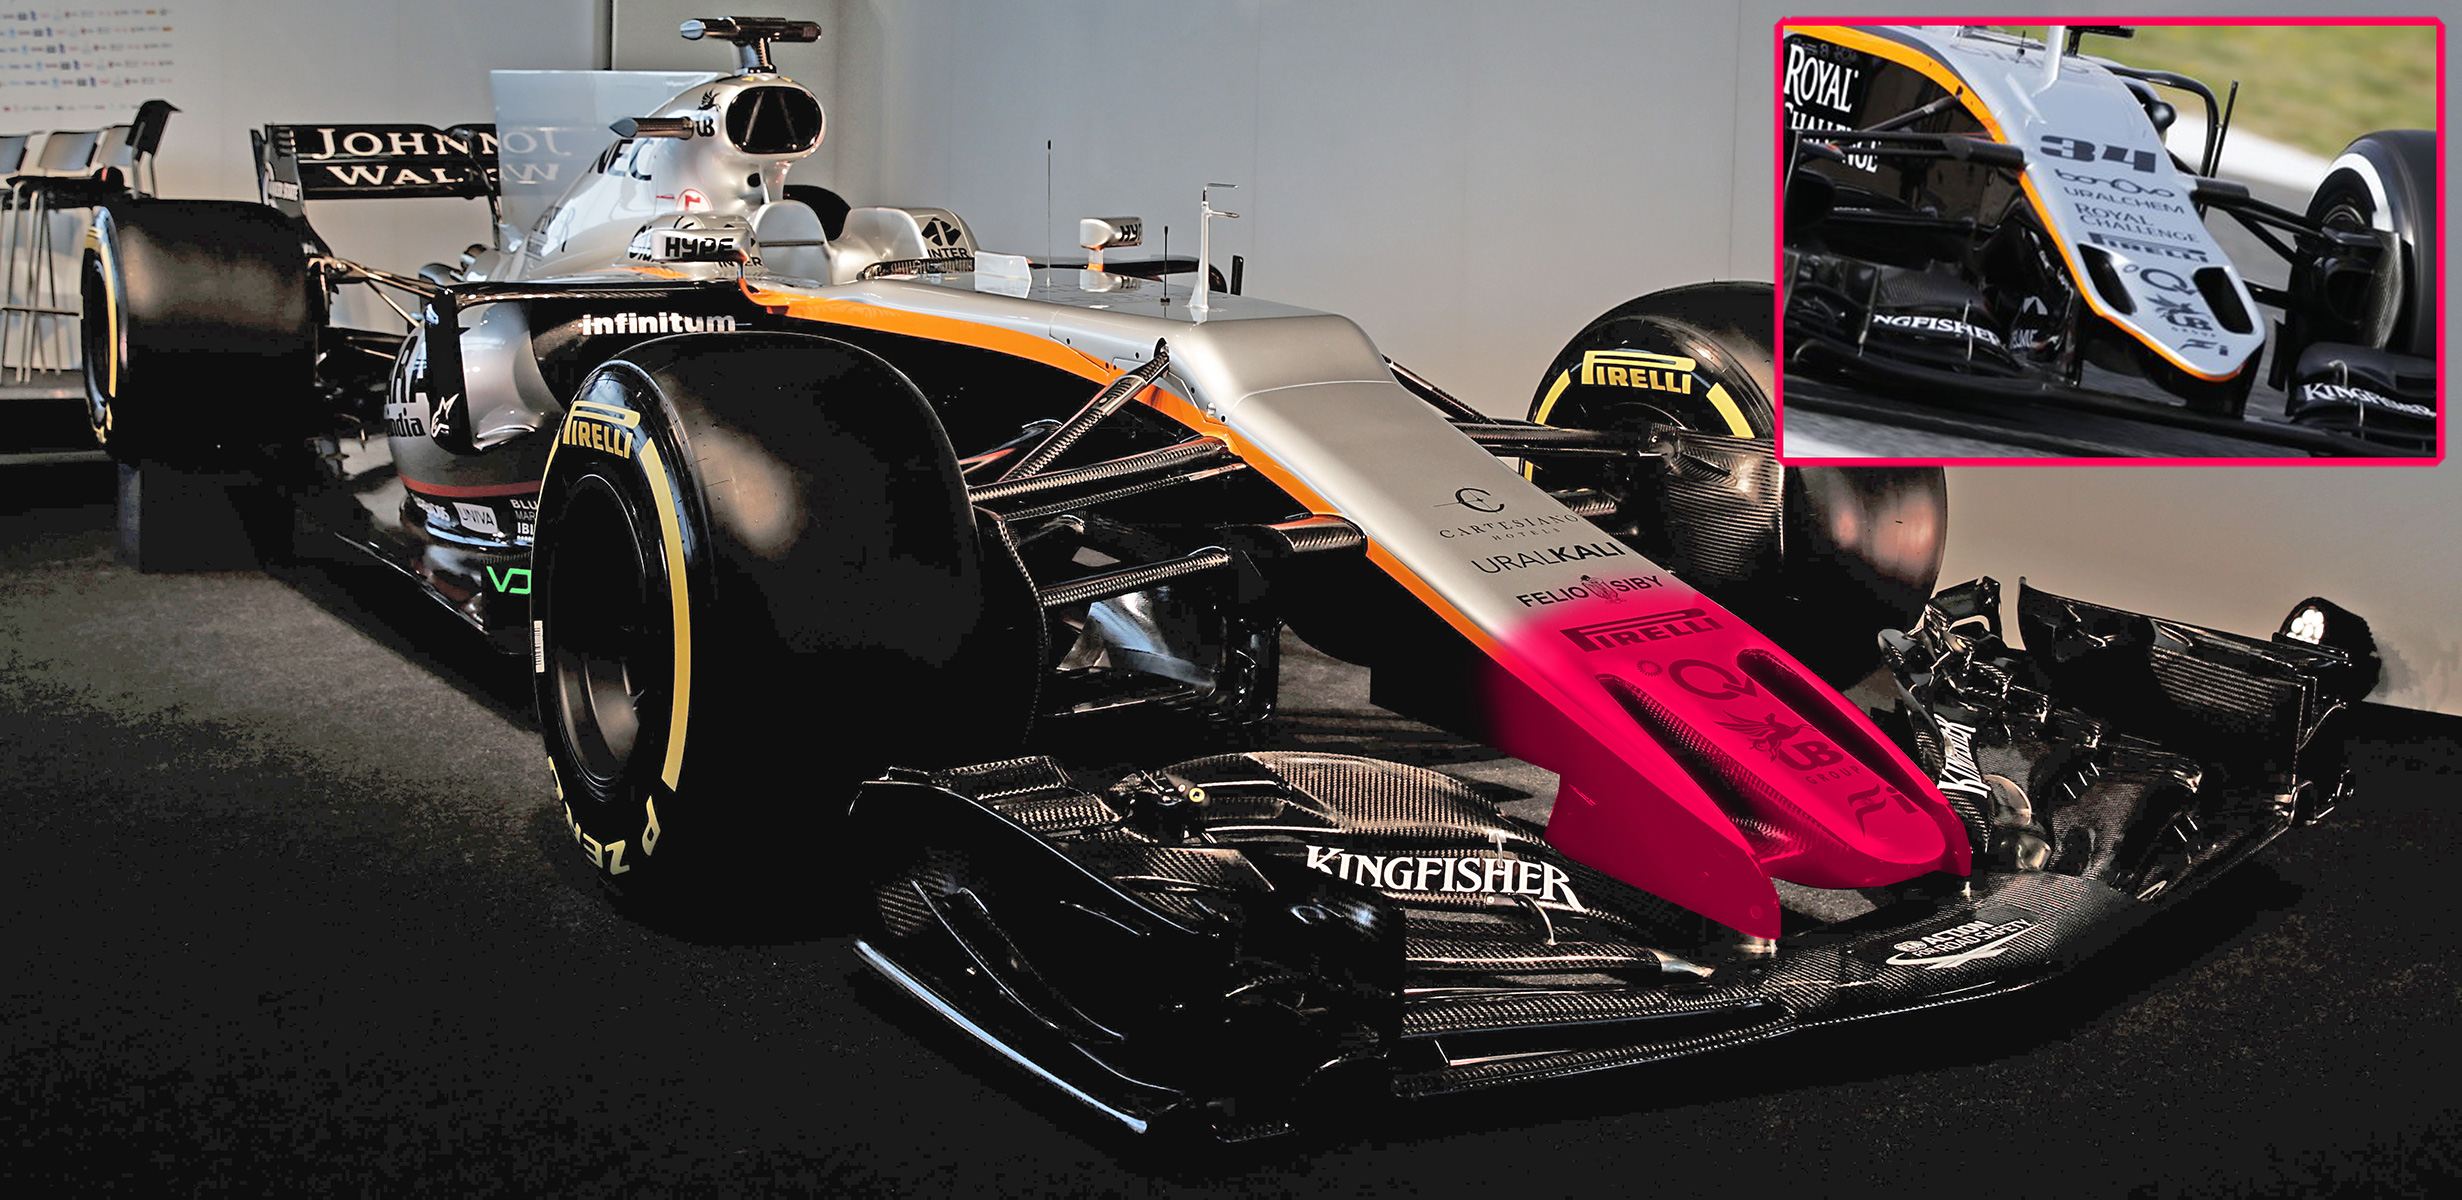 Análisis técnico del Force India VJM10